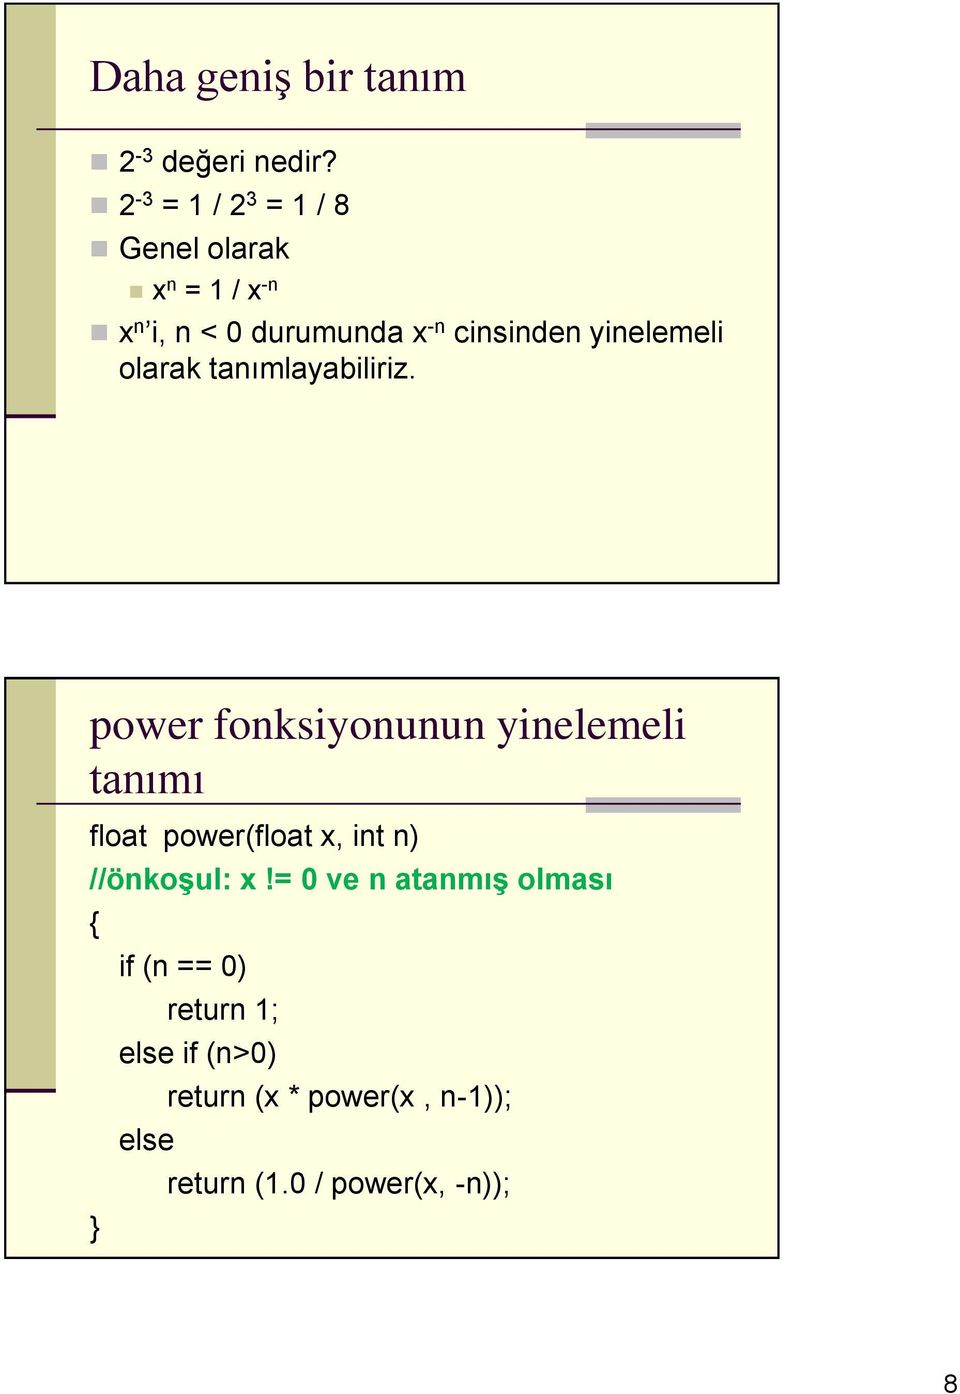 power fonksiyonunun yinelemeli tnımı flot power(flot x, int n) //önkoşul: x!